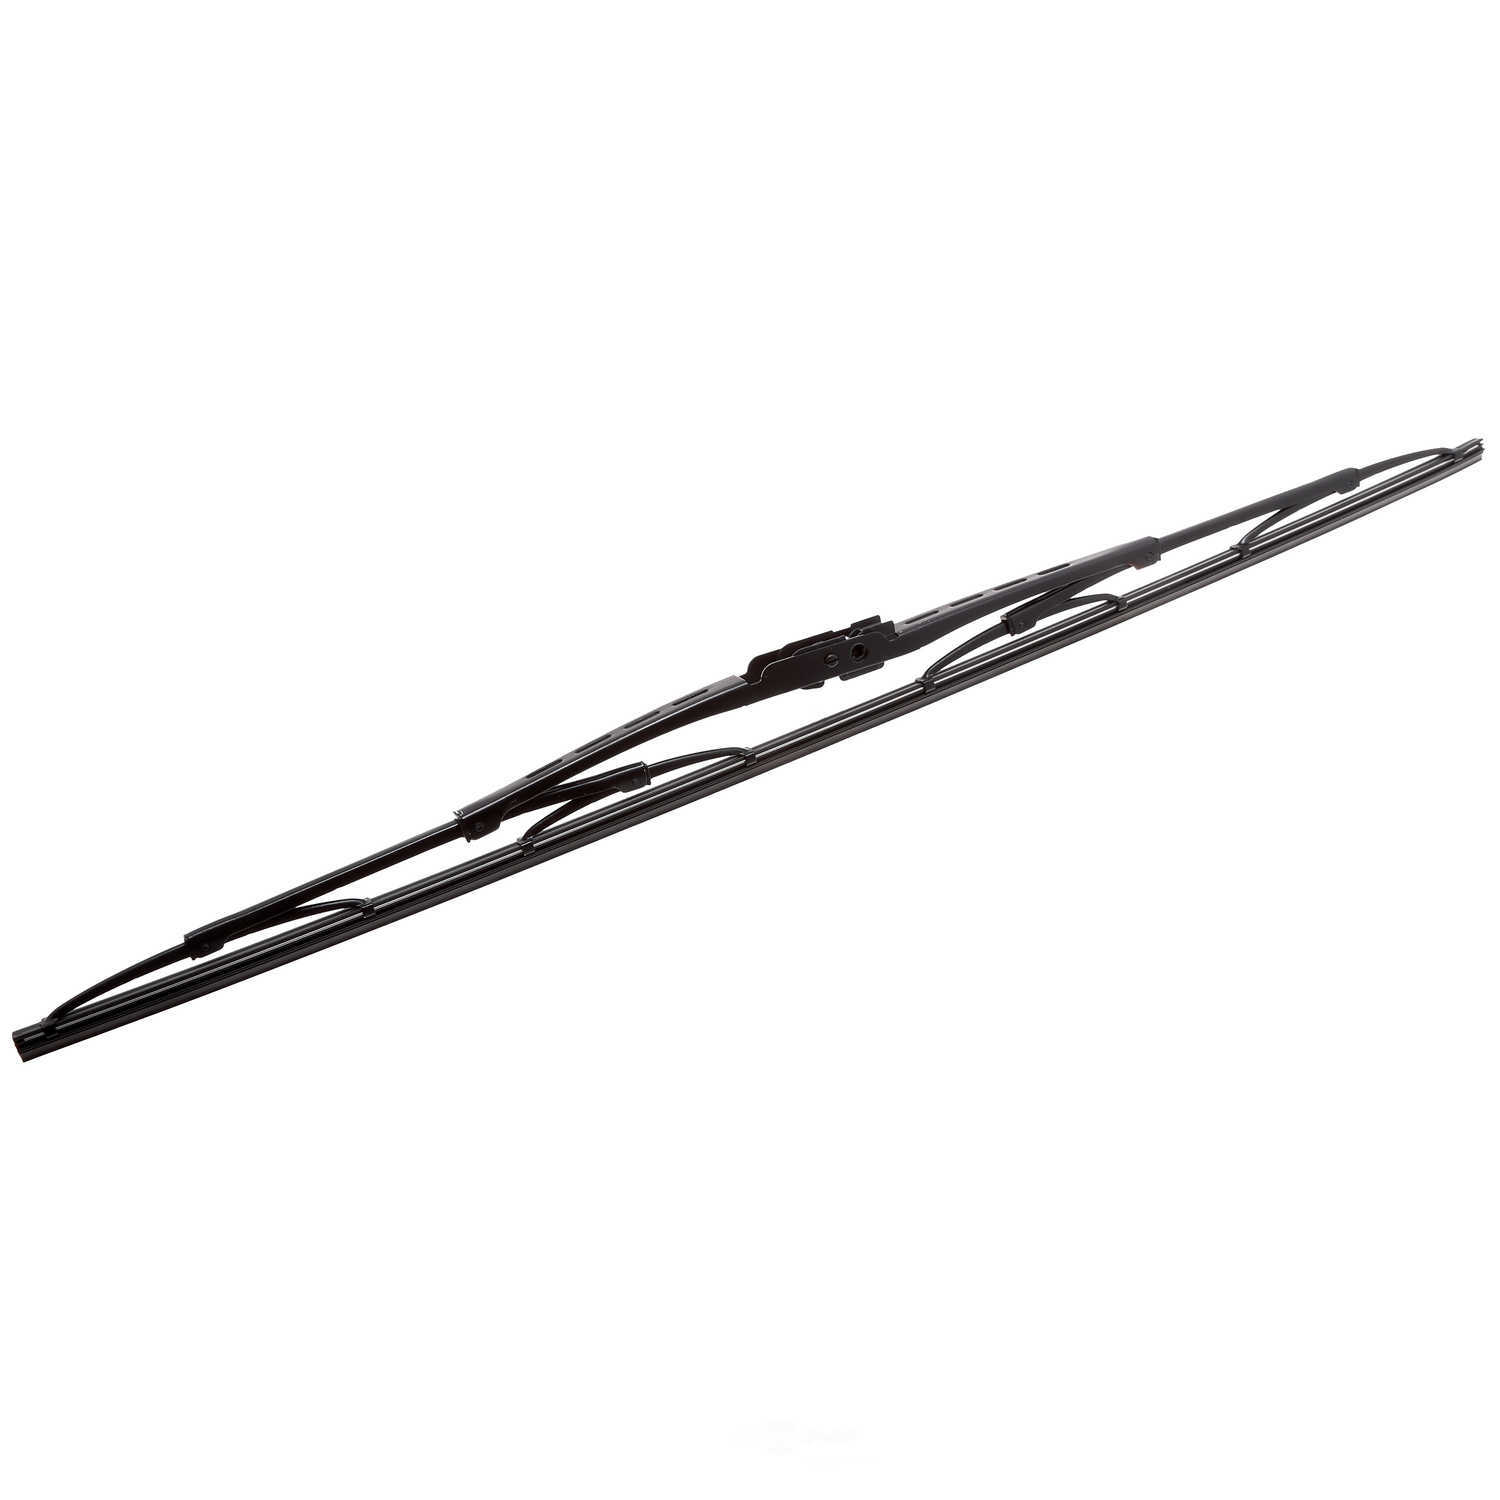 ANCO WIPER PRODUCTS - ANCO 31-Series Wiper Blade - ANC 31-24